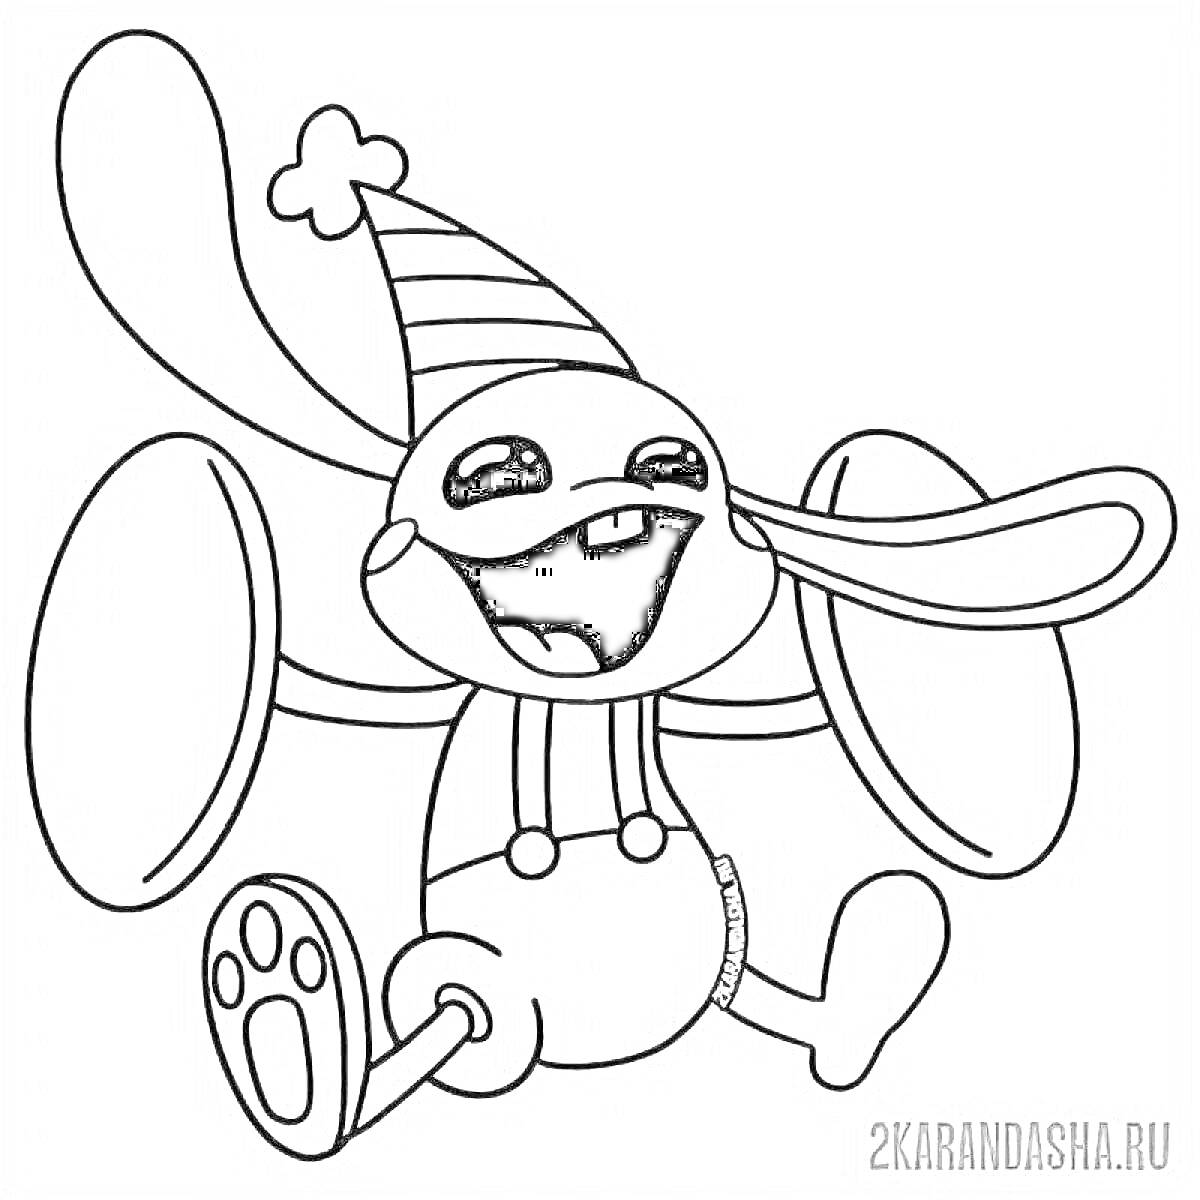 Раскраска Кролик Бонзо с ушами, в шляпе и с ремнями на штанах